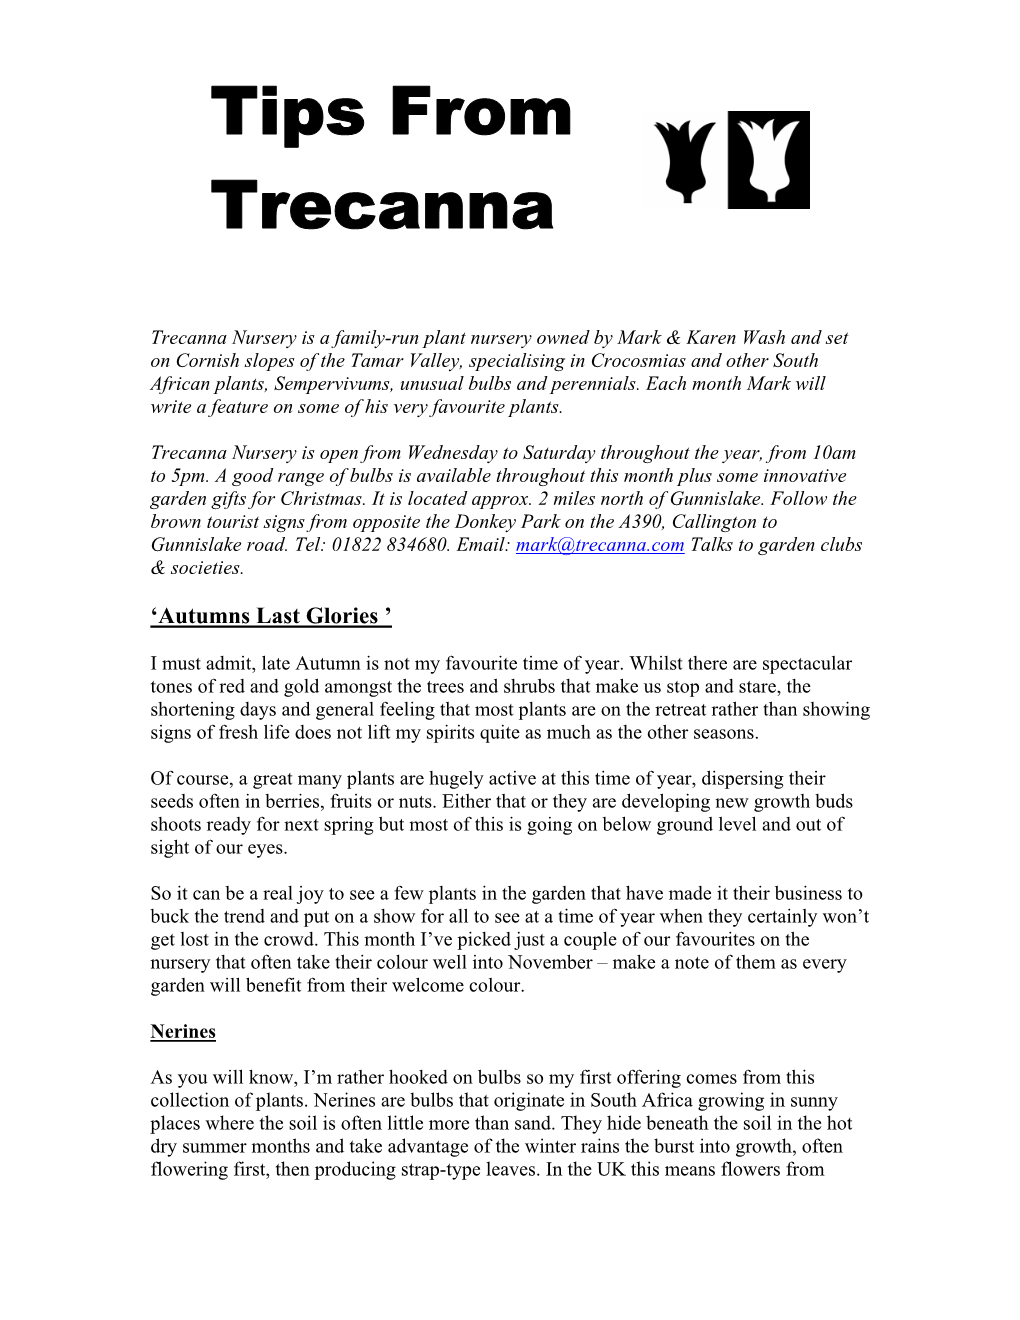 Trecanna Nursery Is a New Plant Nursery Set on Cornish Slopes of The